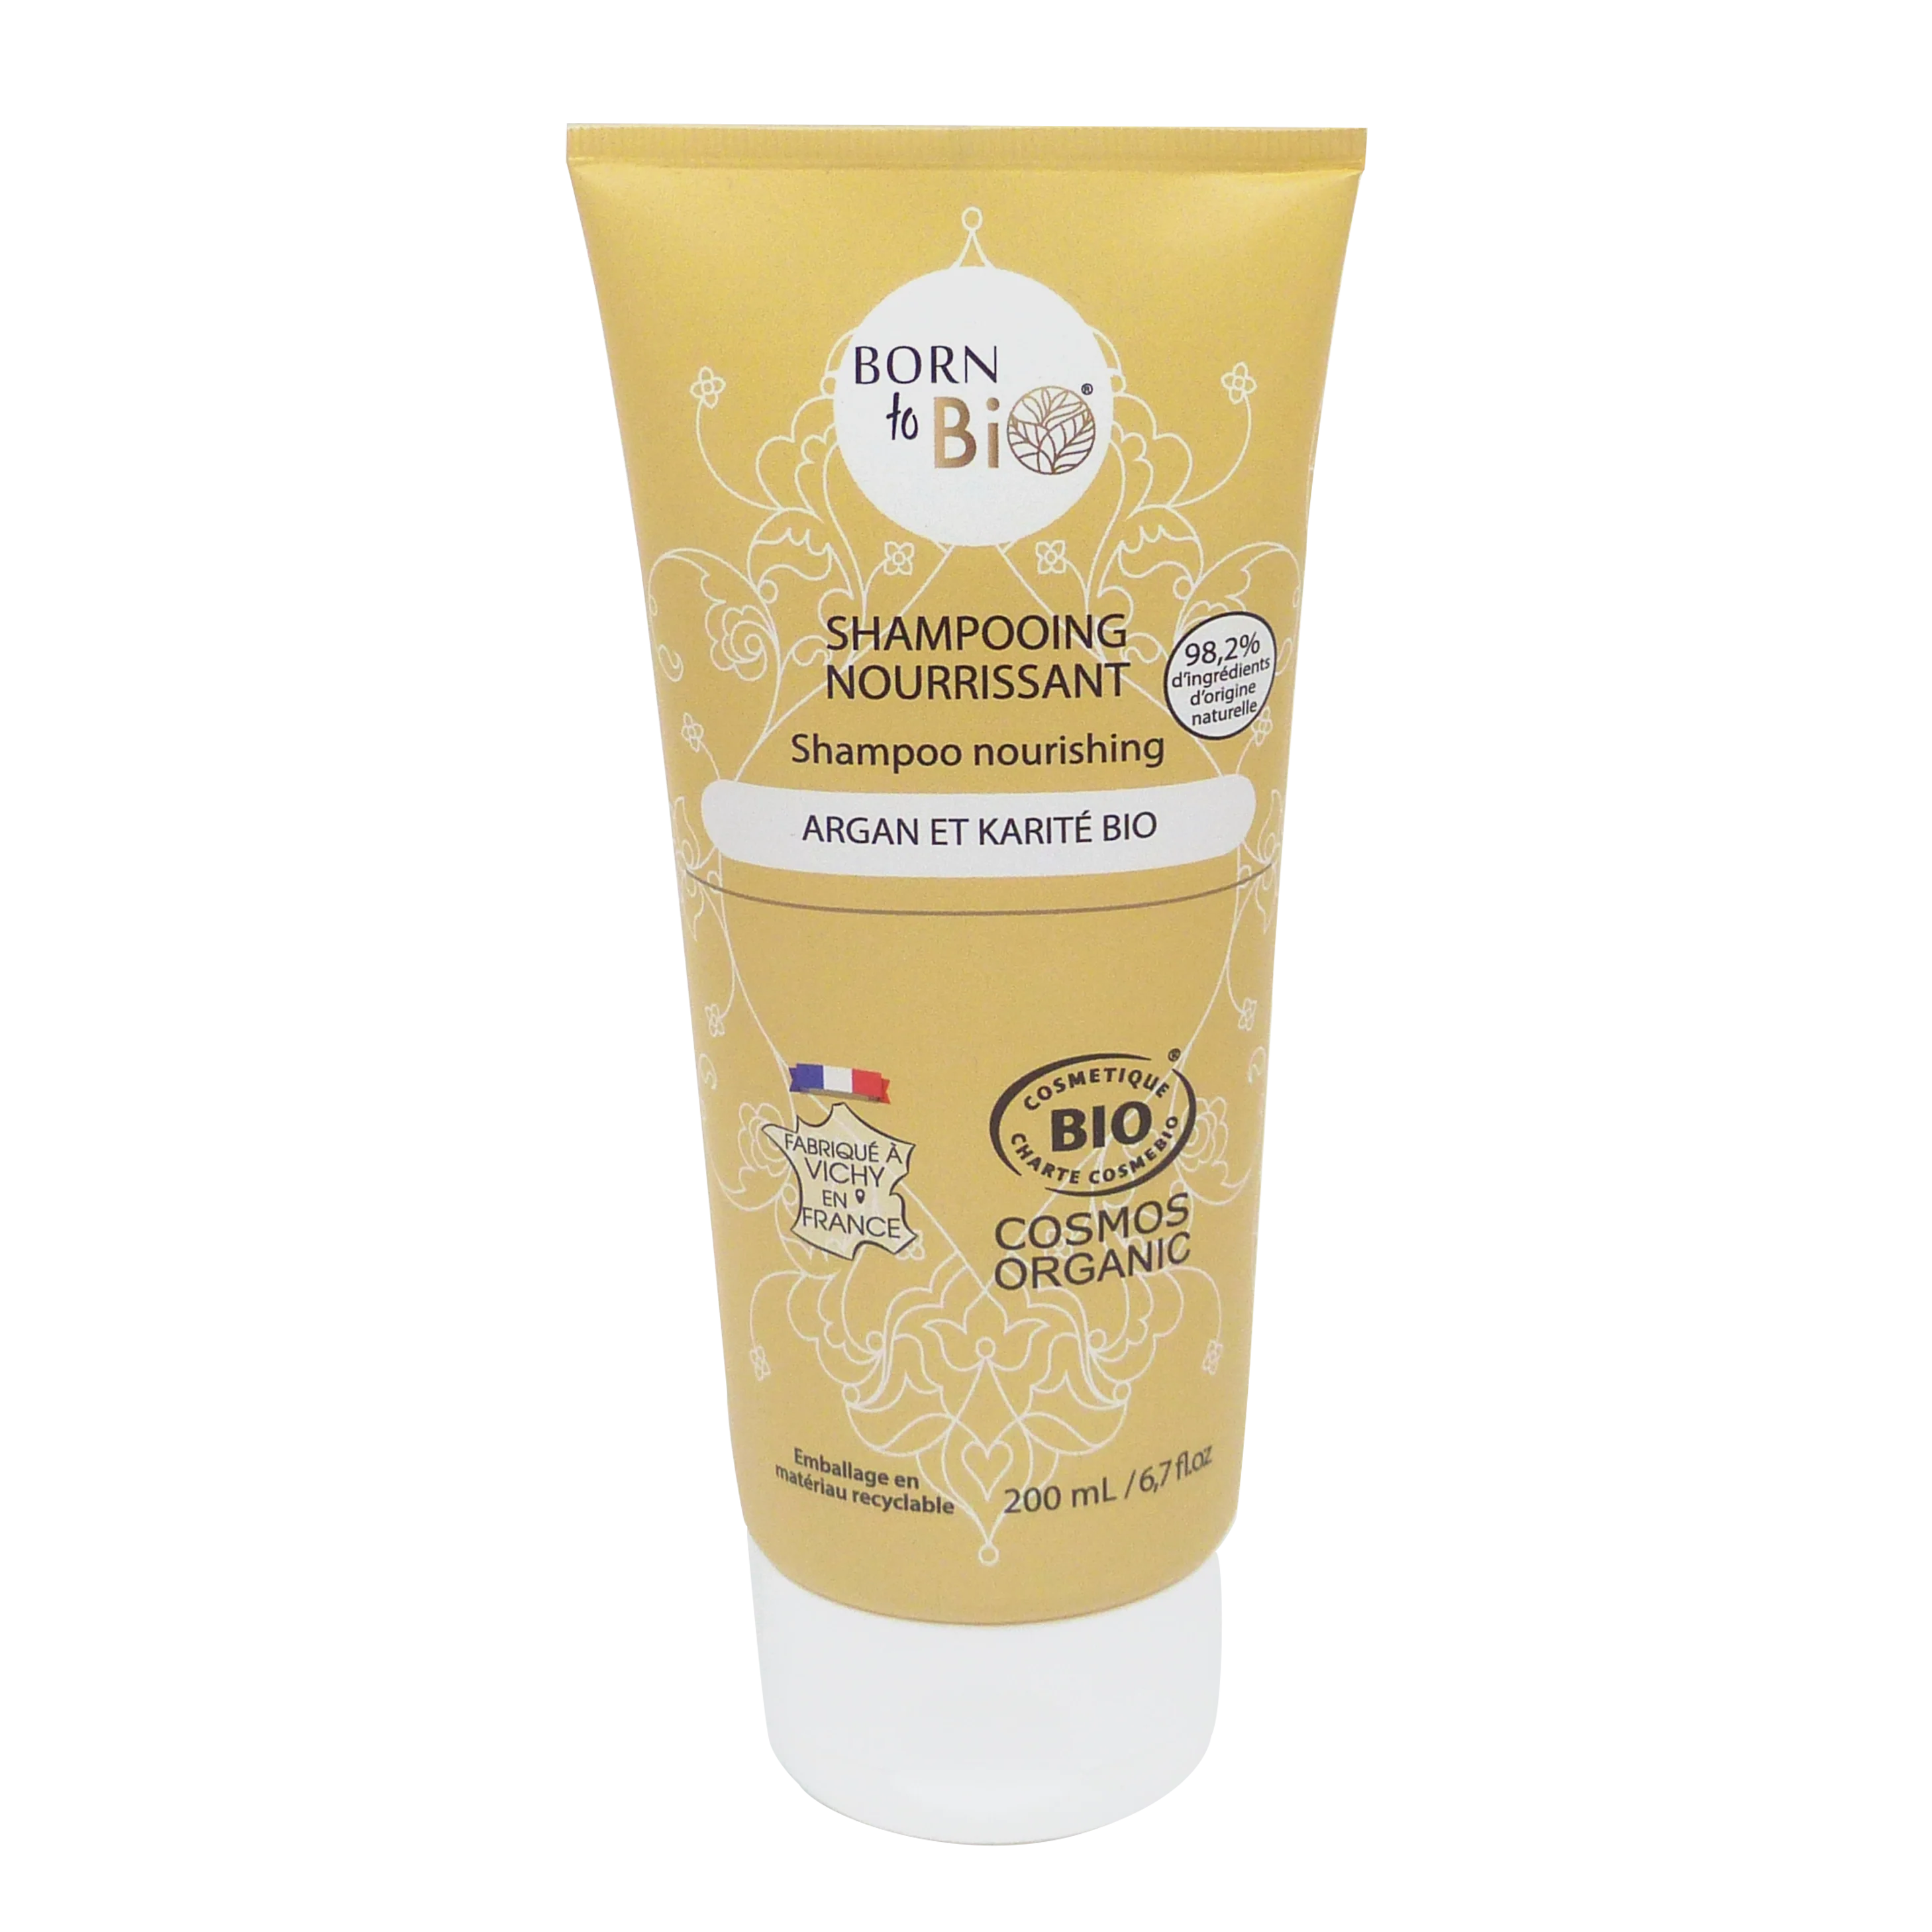 Argan and Shea Nourishing Shampoo - Certified organic-0